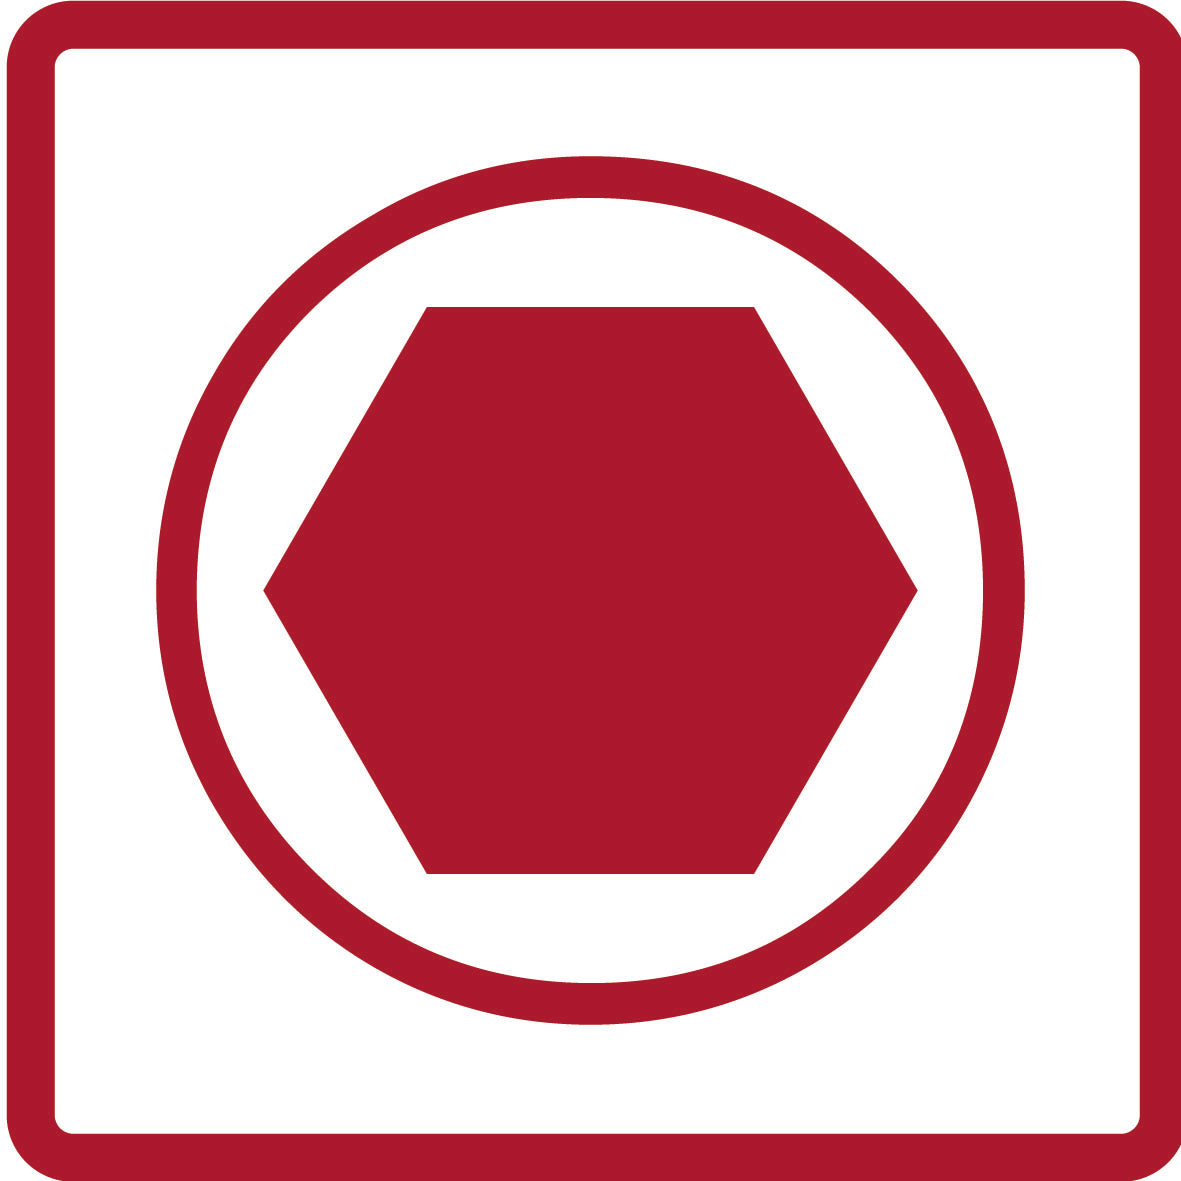 GEDORE rouge R41008012 - Jeu de douilles hexagonales 1/4" avec rail, 12 pièces (3300021)